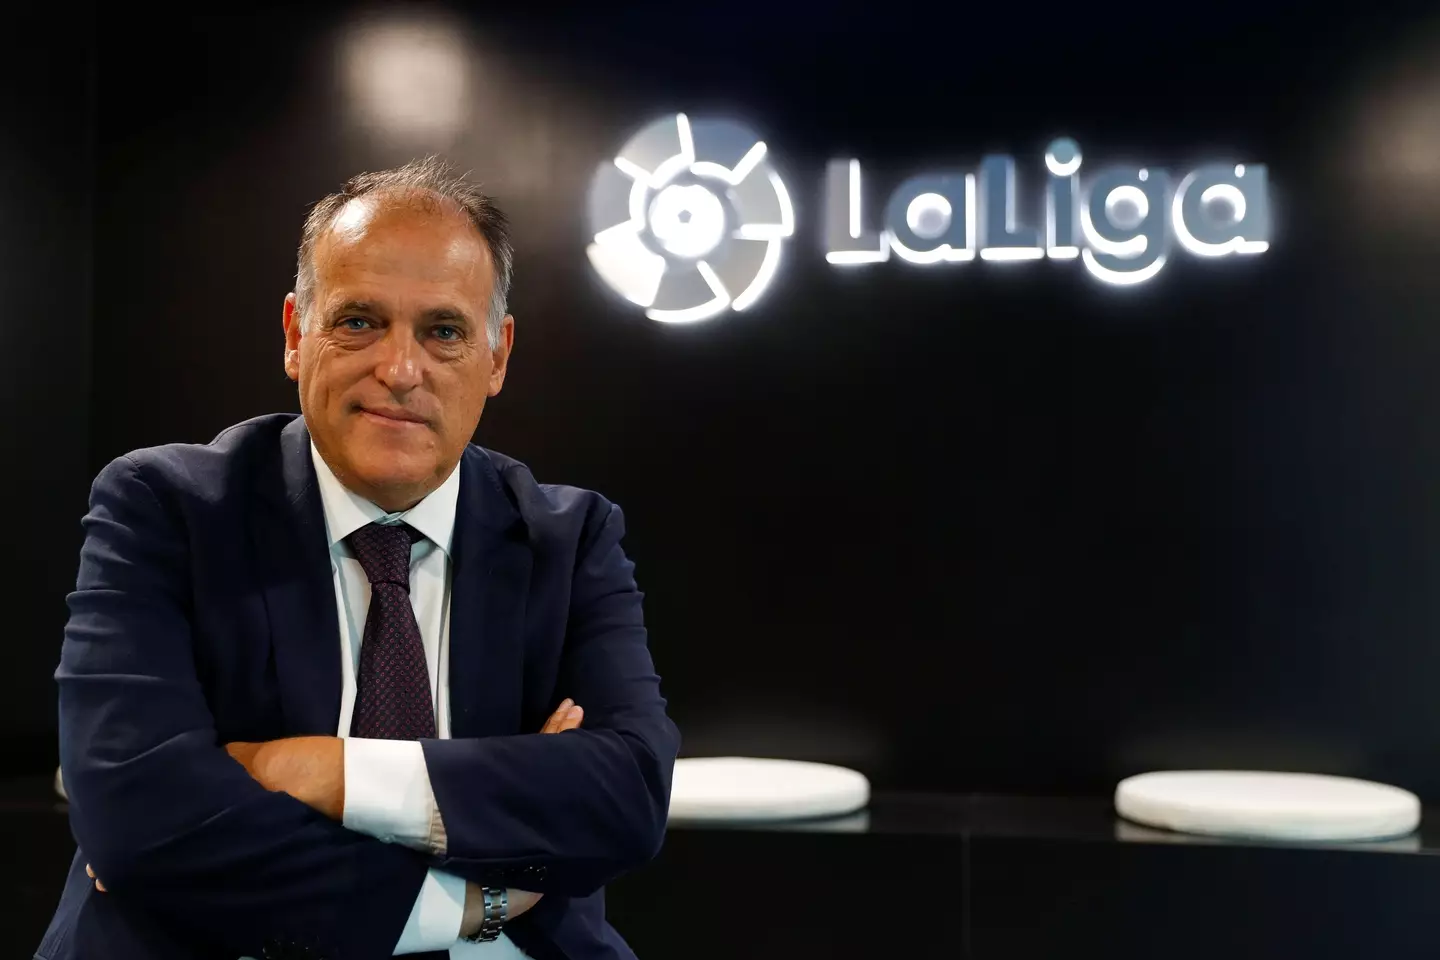 La Liga president, Javier Tebas. REUTERS / Alamy